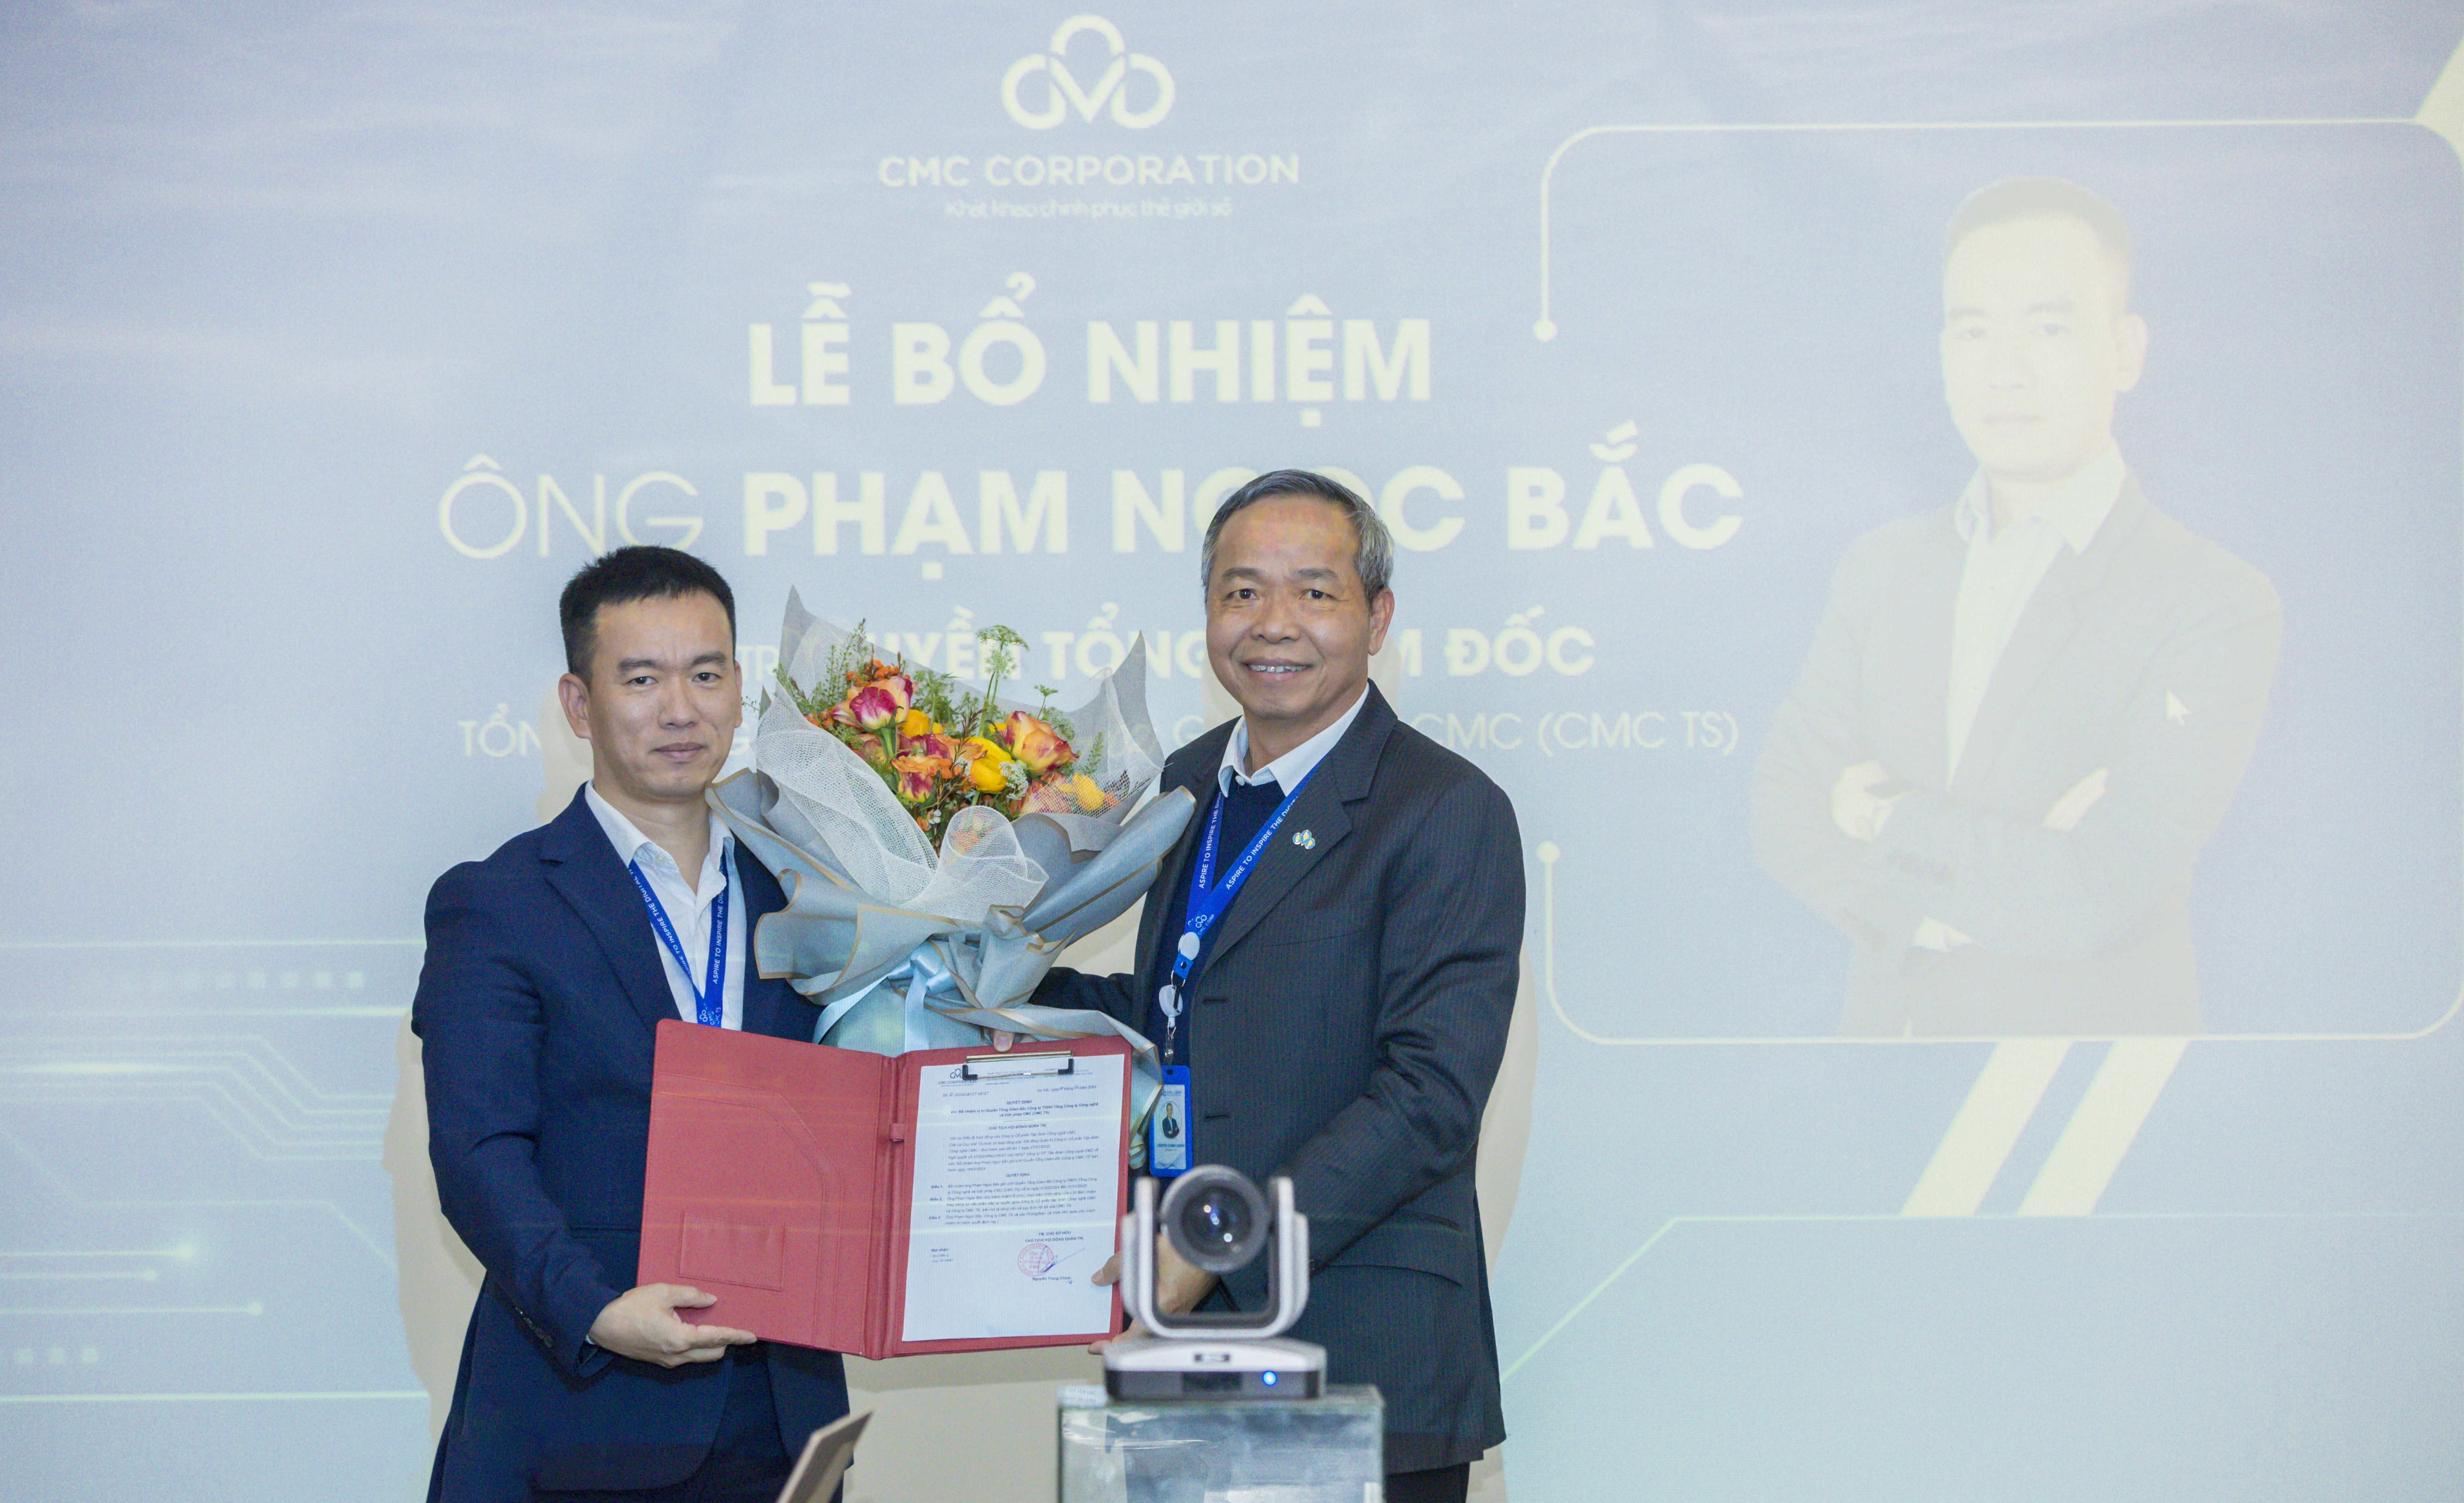 Ông Phạm Ngọc Bắc nhận Quyết định bổ nhiệm quyền Tổng giám đốc CMC TS và hoa chúc mừng từ ông Nguyễn Trung Chính - Chủ tịch HĐQT, Chủ tịch Điều hành CMC.